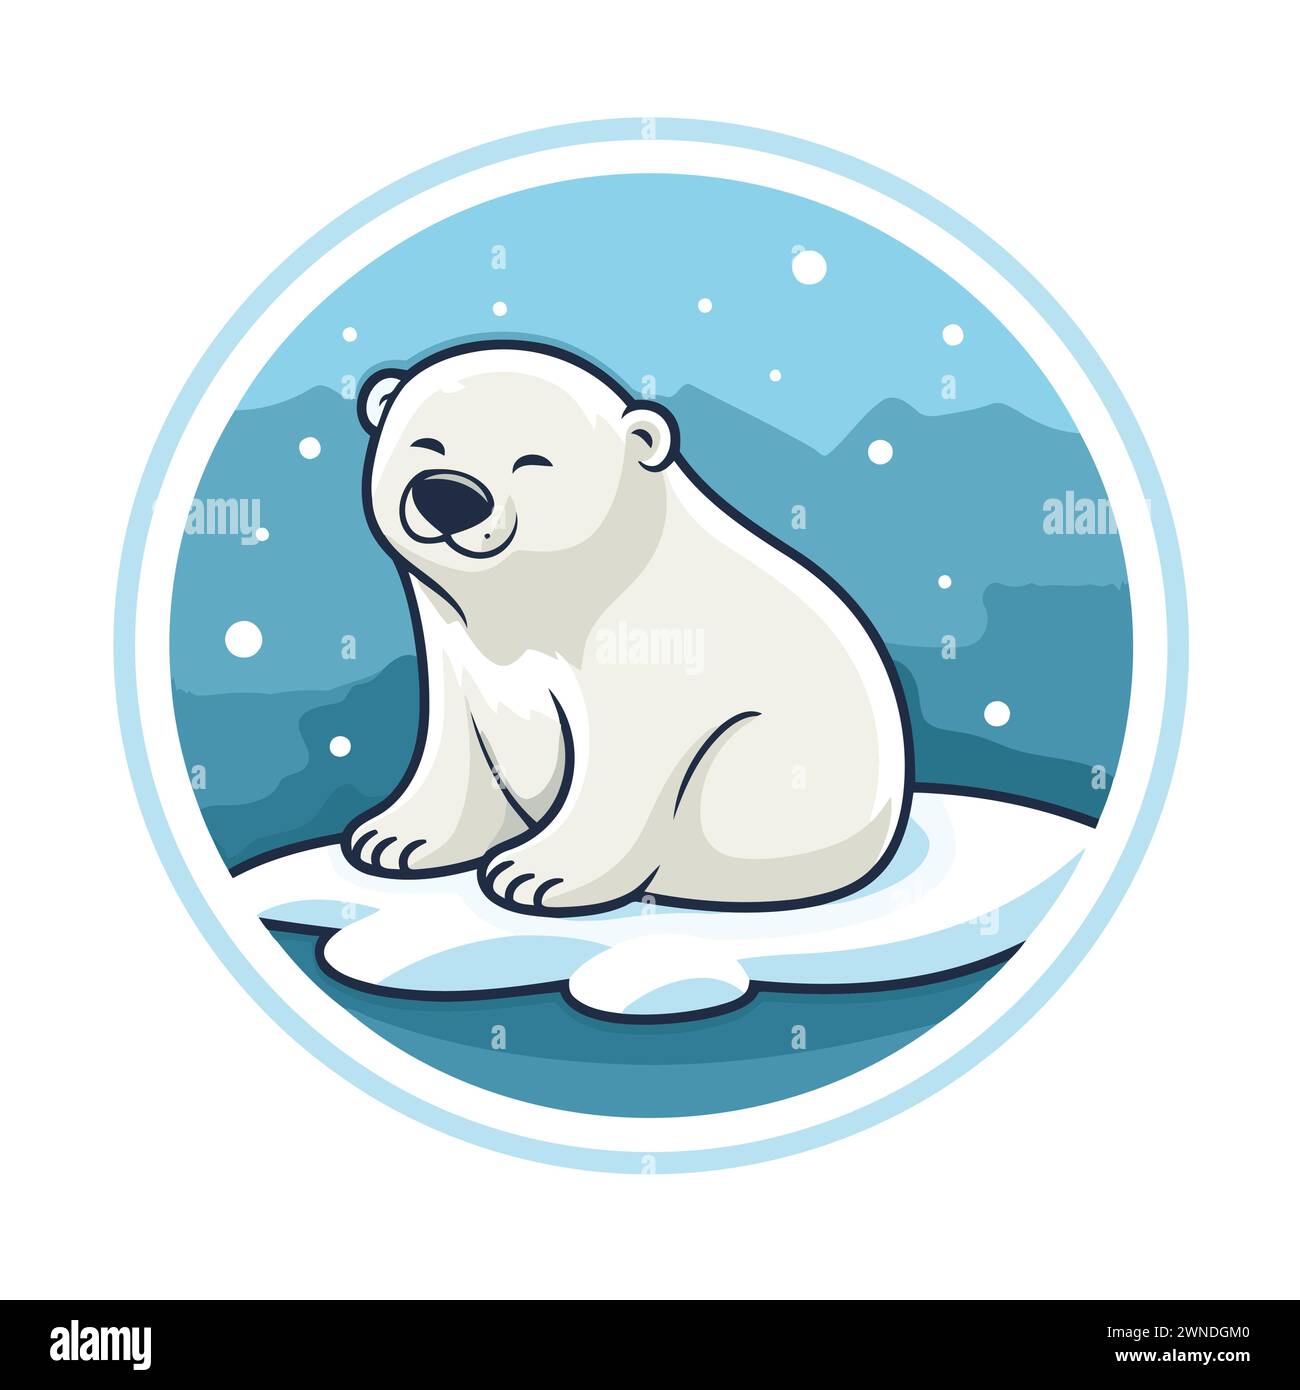 Polar bear on the snow. Vector illustration in cartoon style. Stock Vector